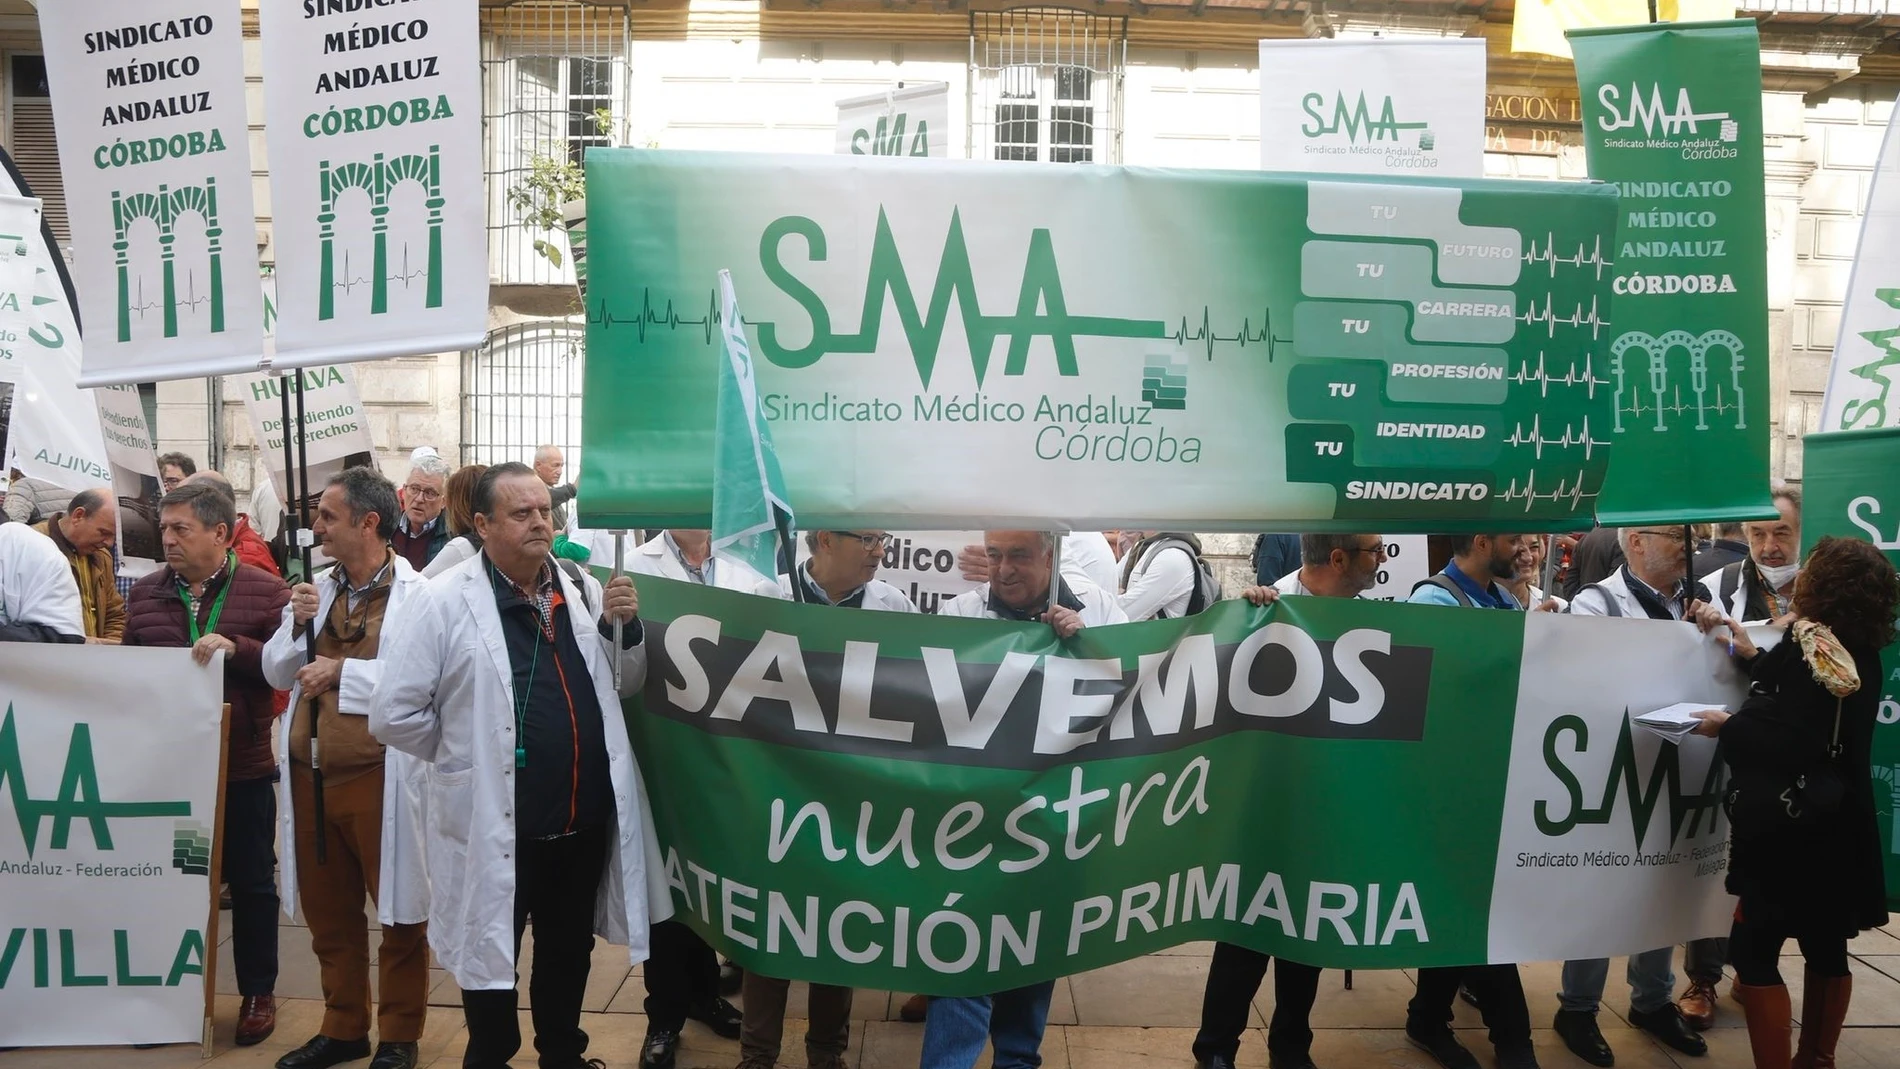 Médicos andaluces ante la Delegación de Salud de la Junta de Andalucía en Málaga para exigir la mejora de las condiciones asistenciales